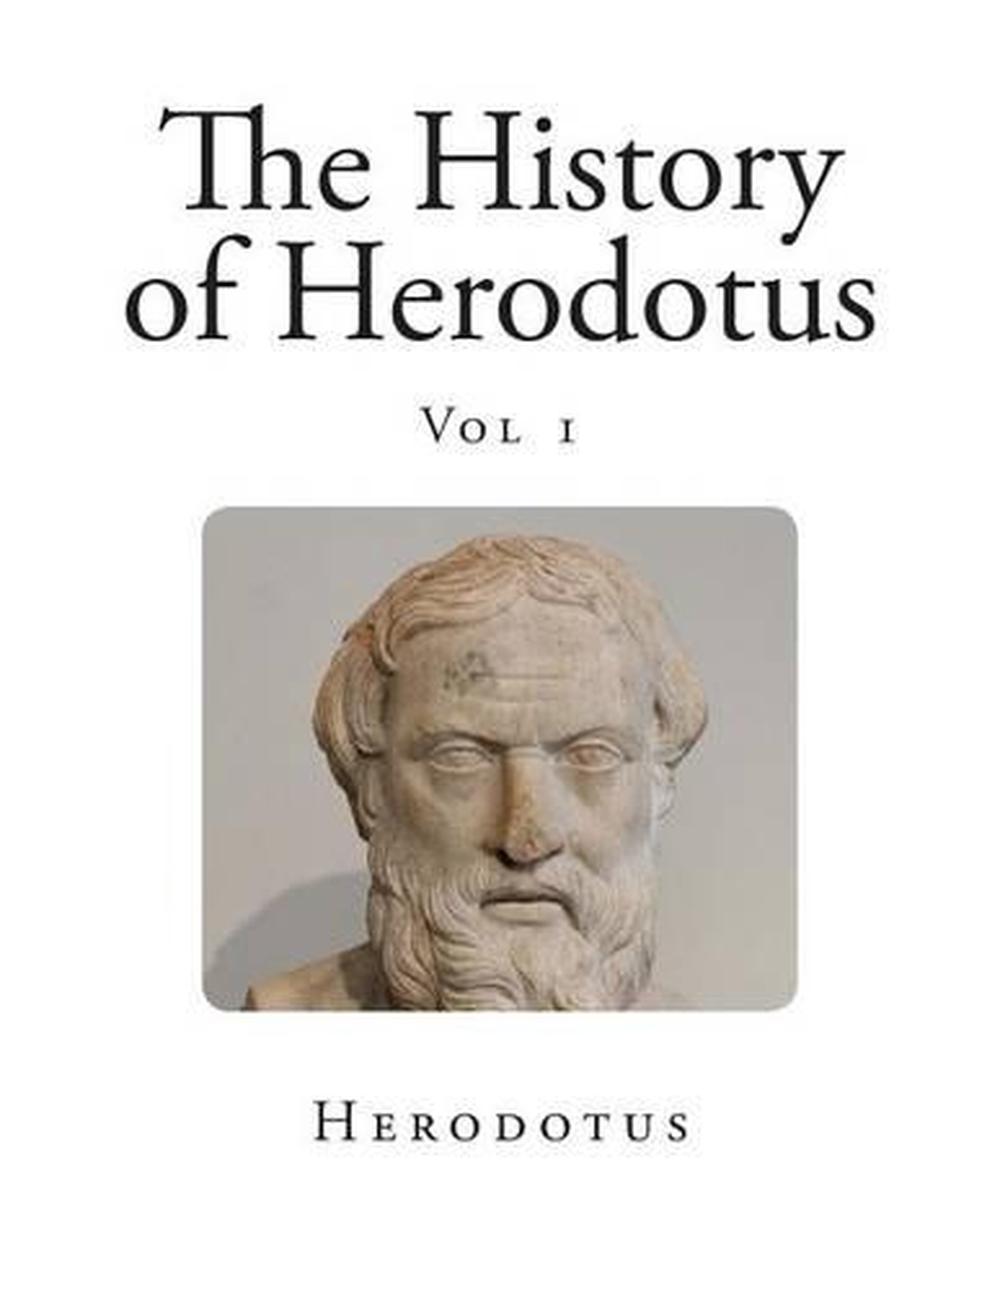 herodotus biography in english